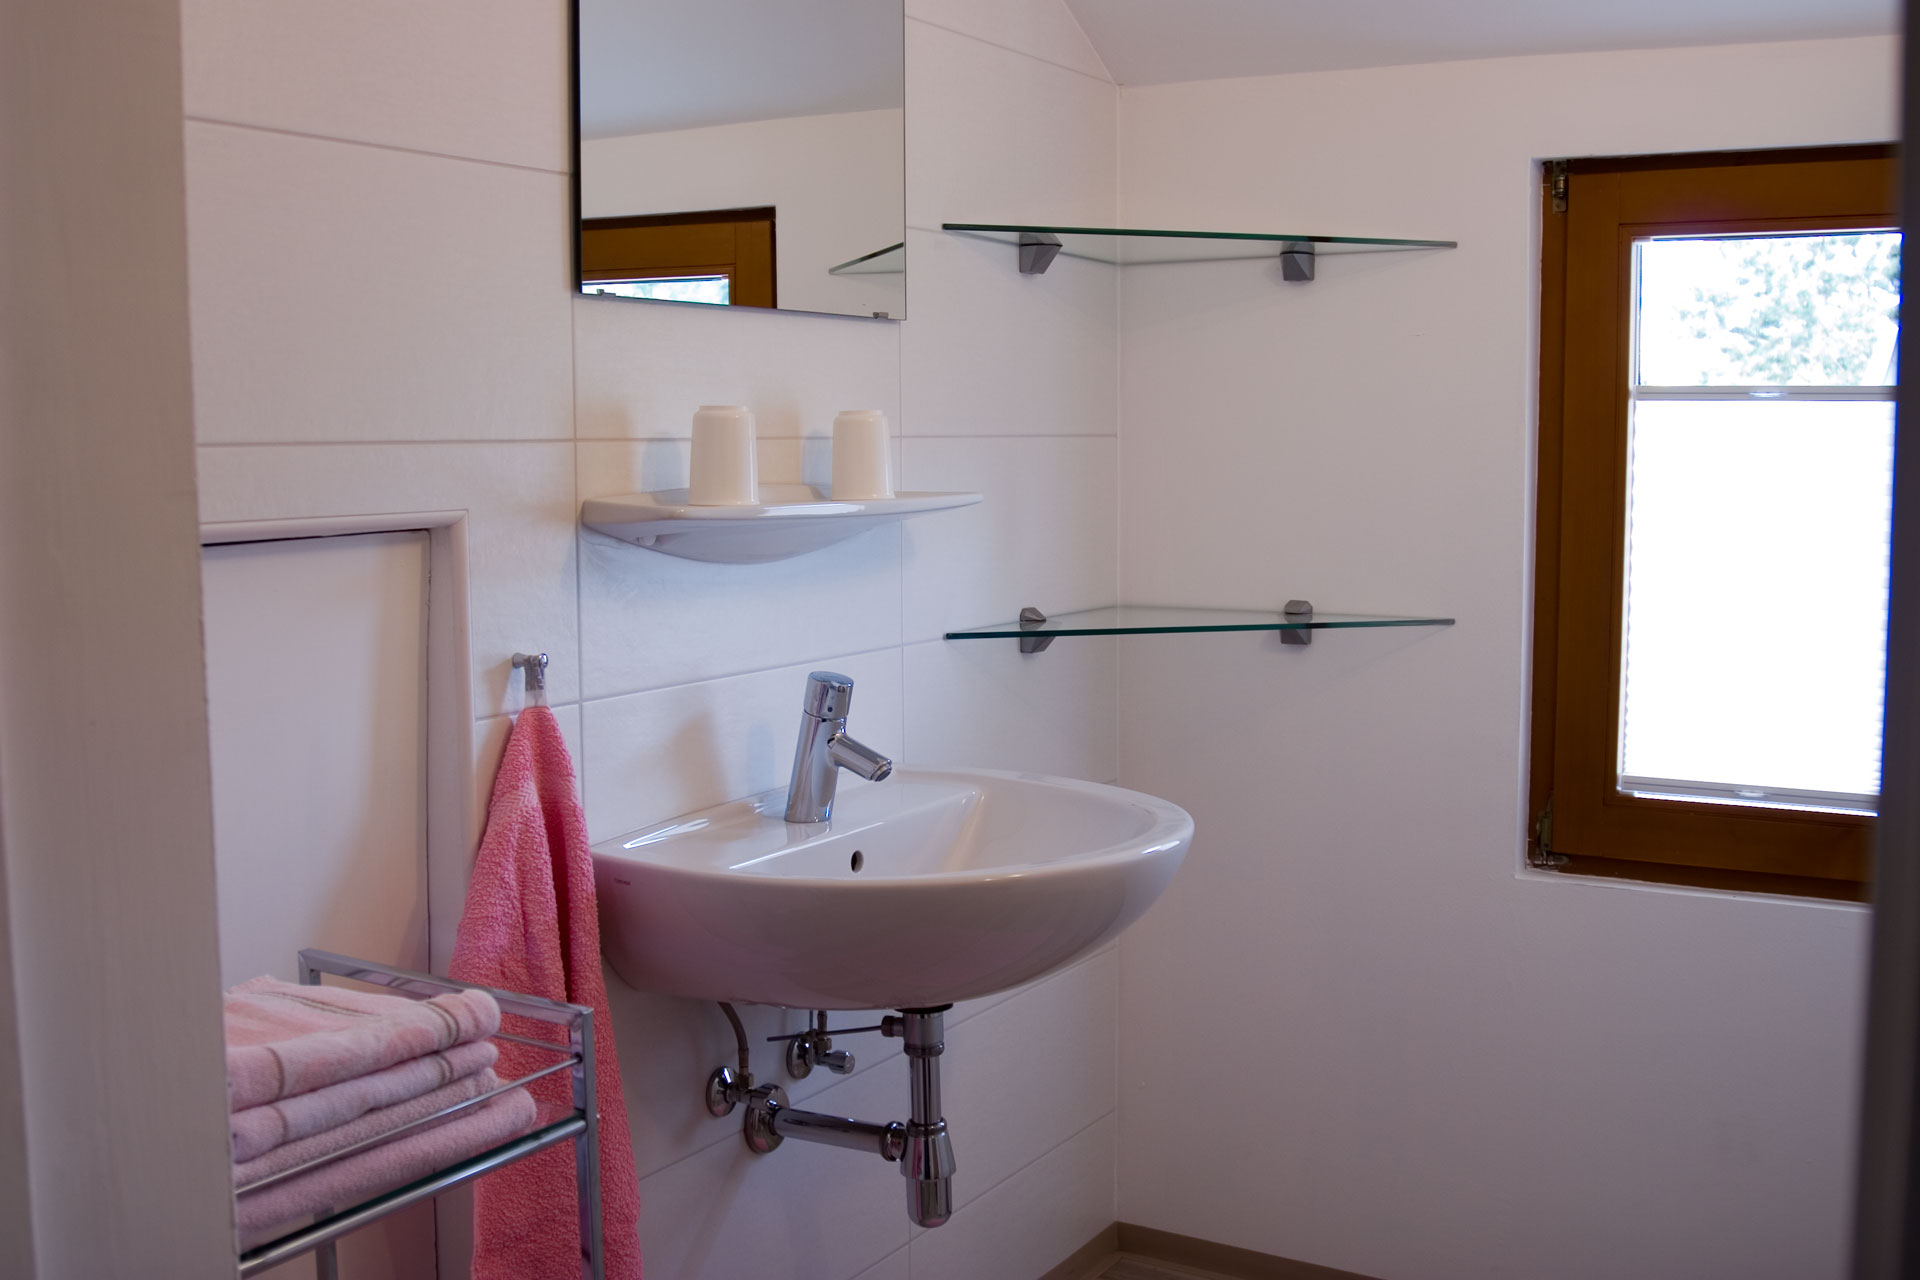 Das kleinere der beiden Zimmer hat einen separaten WC-/Duschbereich, welcher über den Flur erreichbar ist.